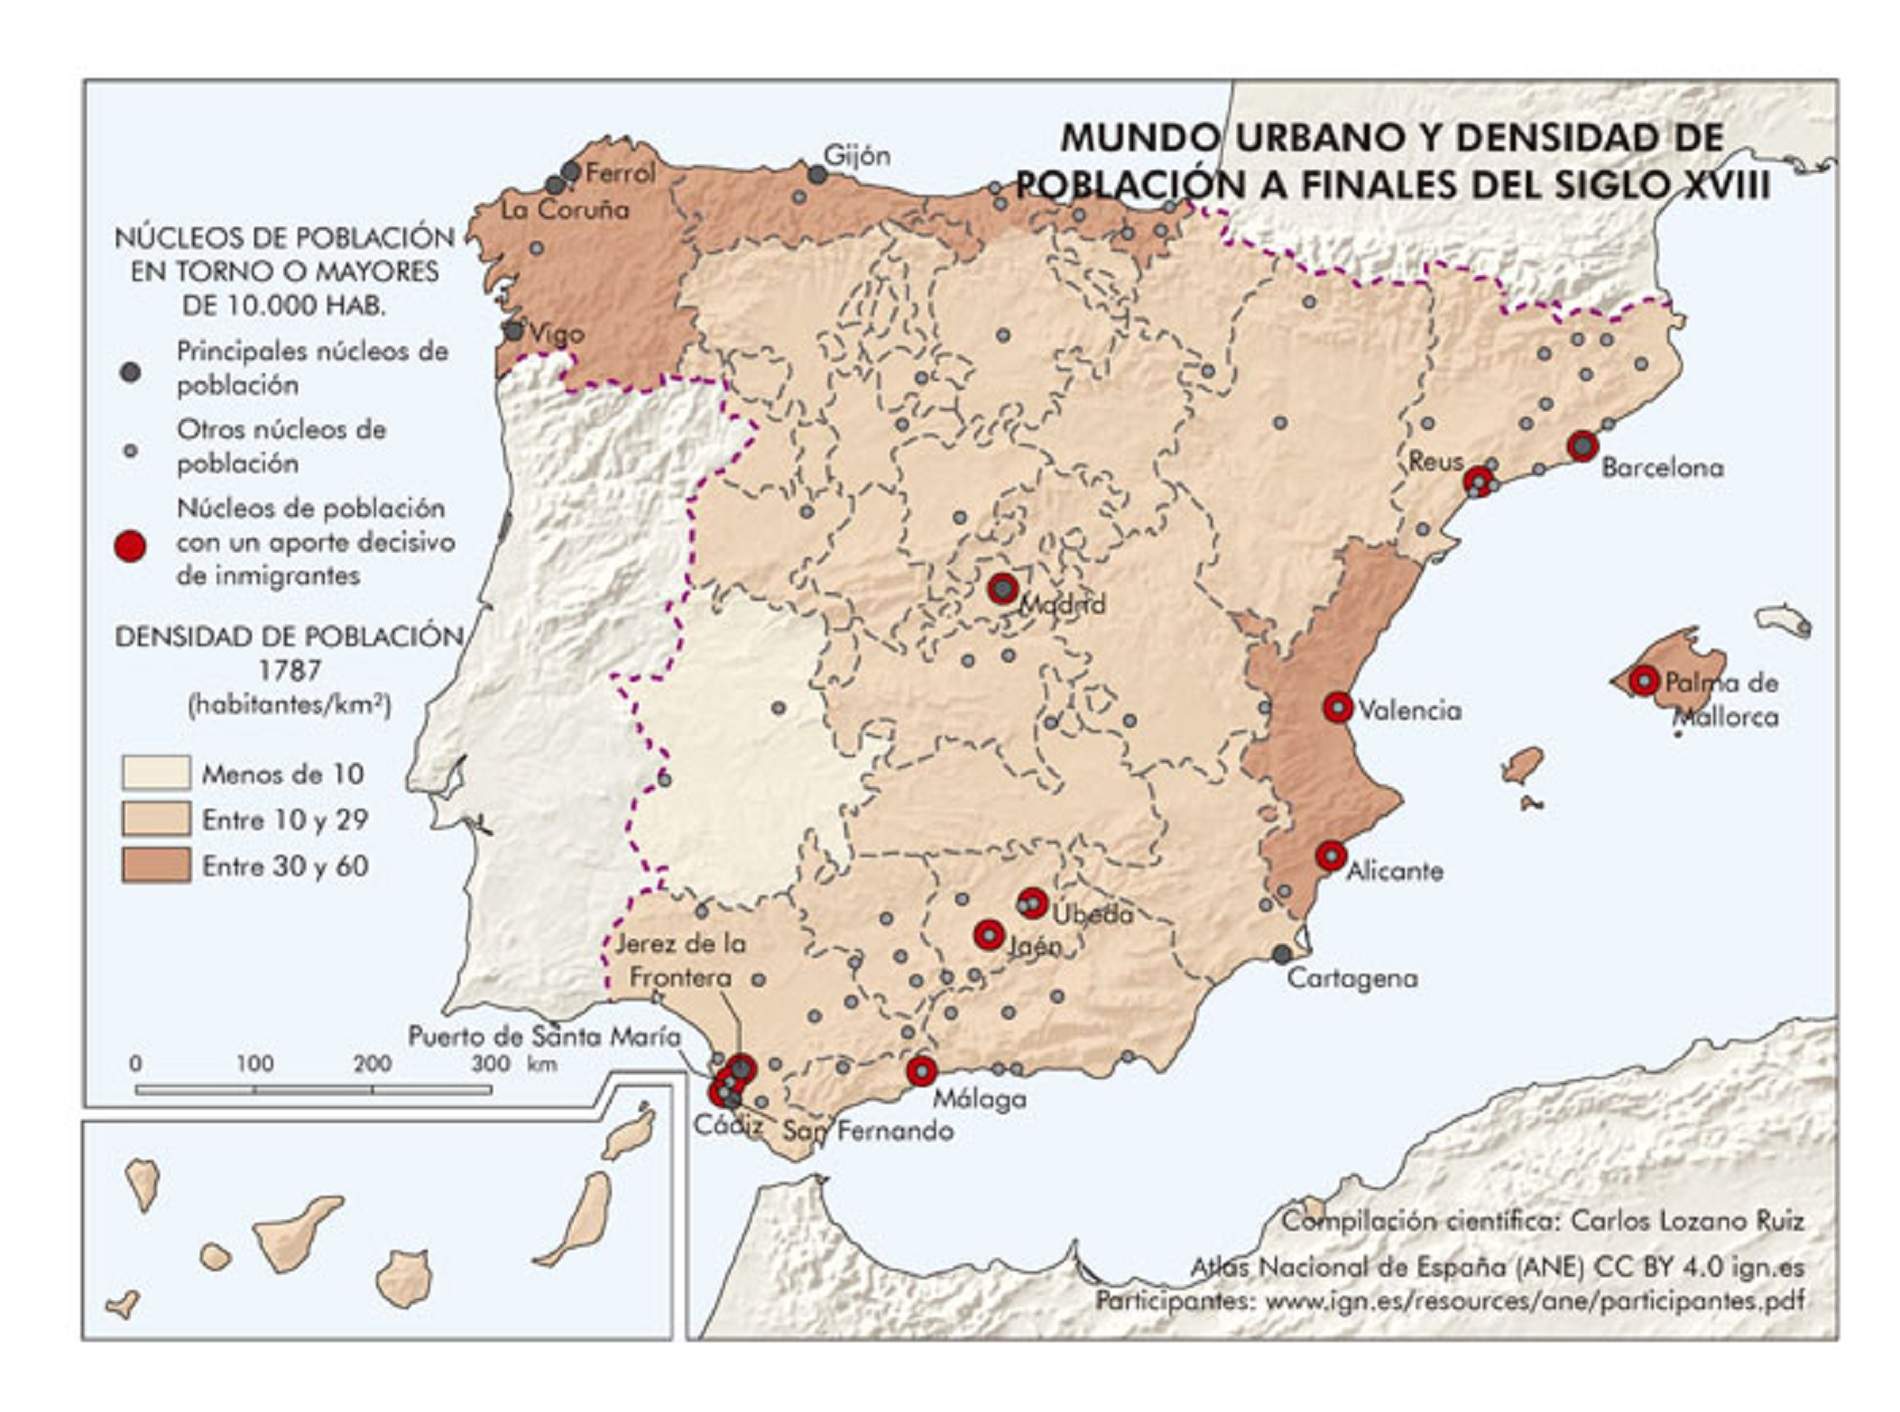 Mapa de les provincies del regne borbonic espanyol abans de la divisió administrativa de 1833. Font IGN (1)